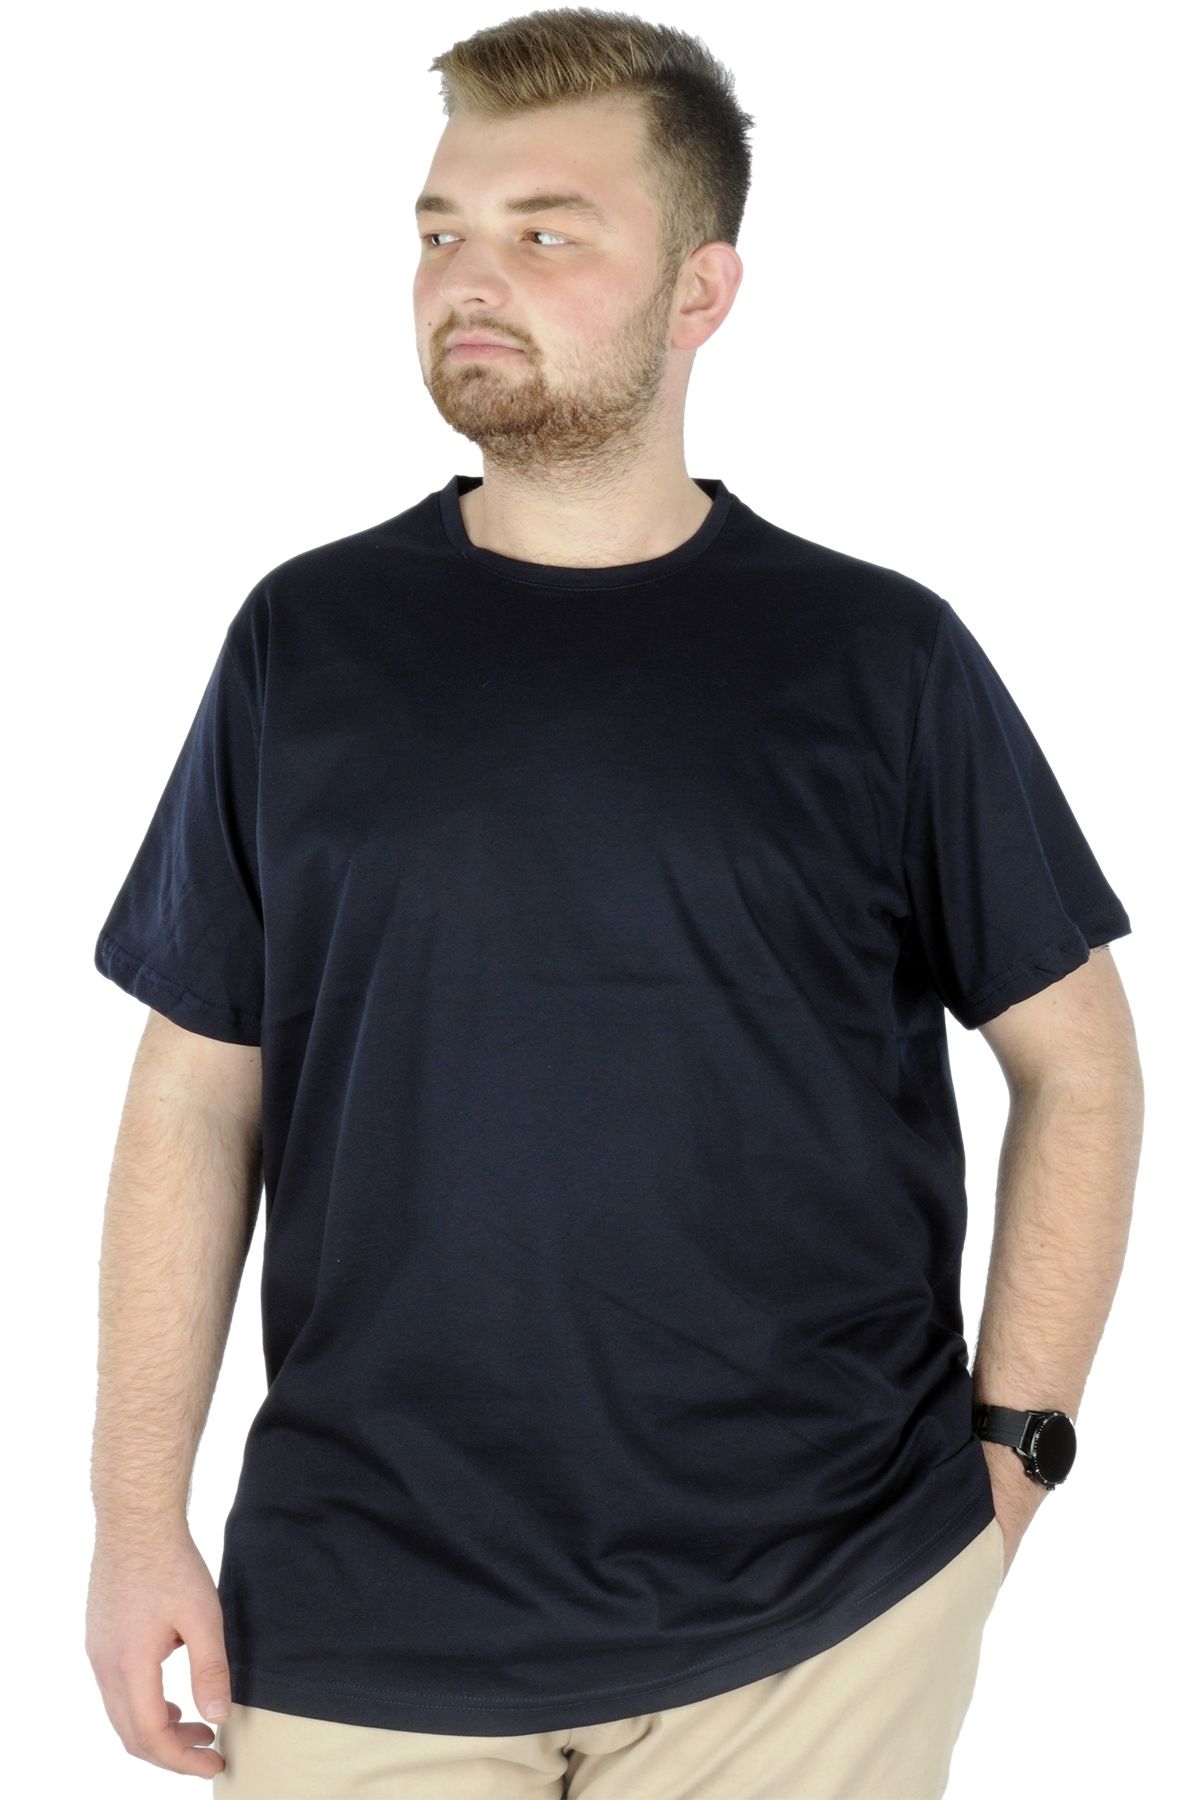 Modexl Mode Xl Büyük Beden Erkek T-shirt Basic 20031 Lacivert